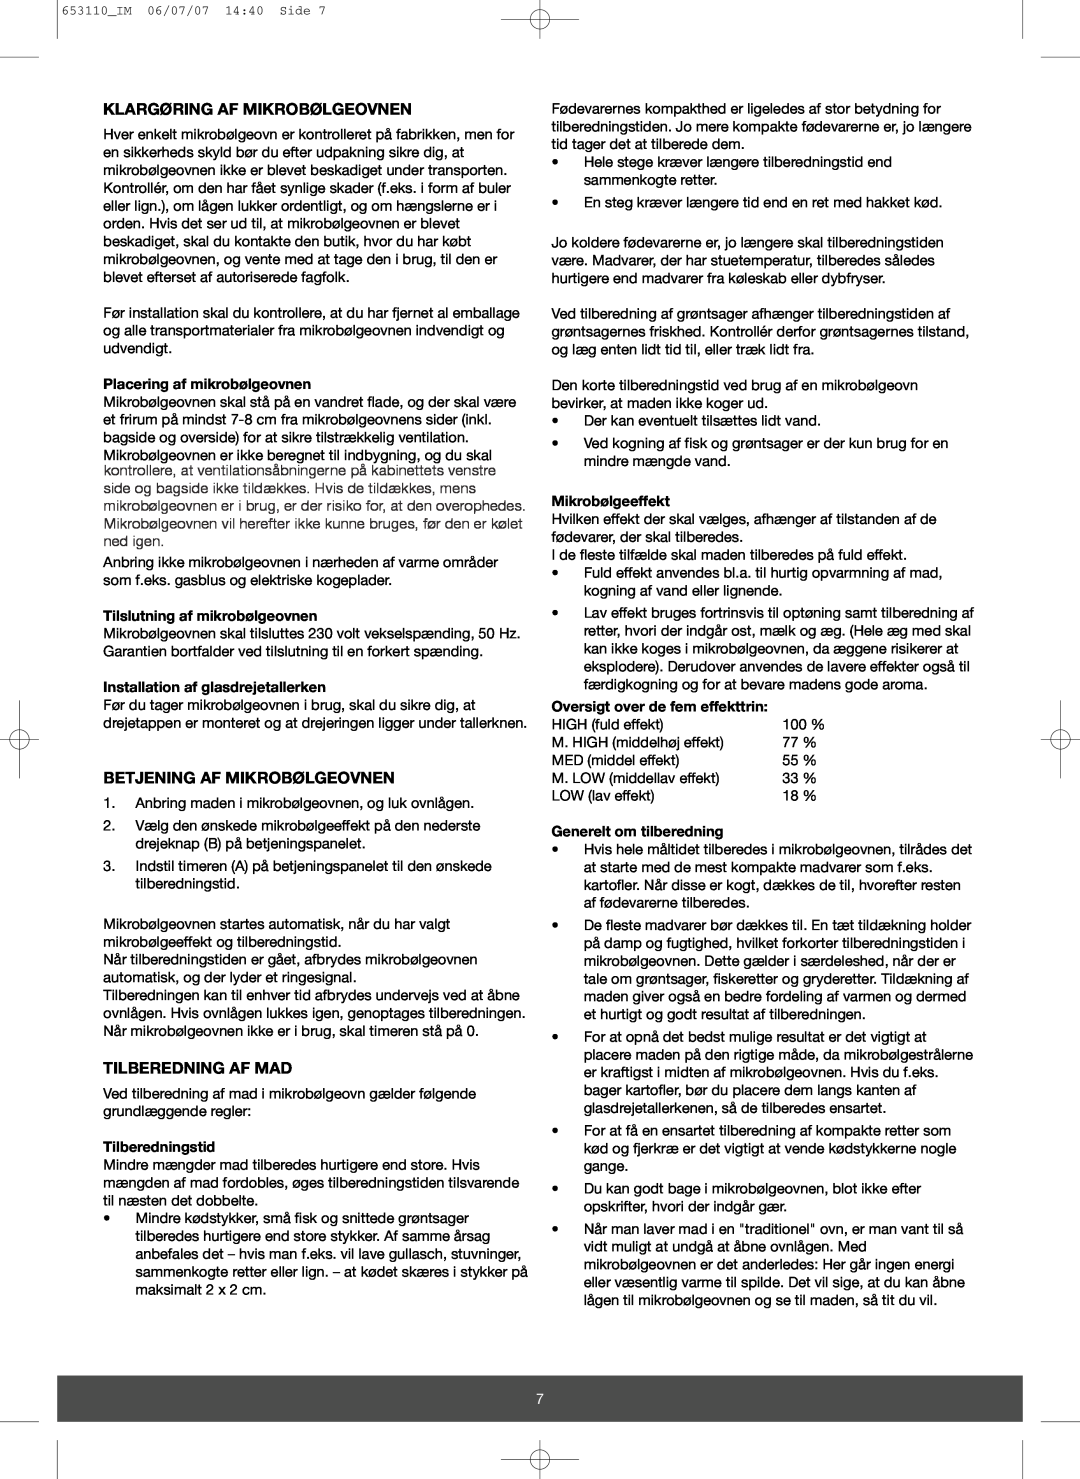 Melissa 653-111 manual Klargøring Af Mikrobølgeovnen, Betjening Af Mikrobølgeovnen, Tilberedning Af Mad, Tilberedningstid 